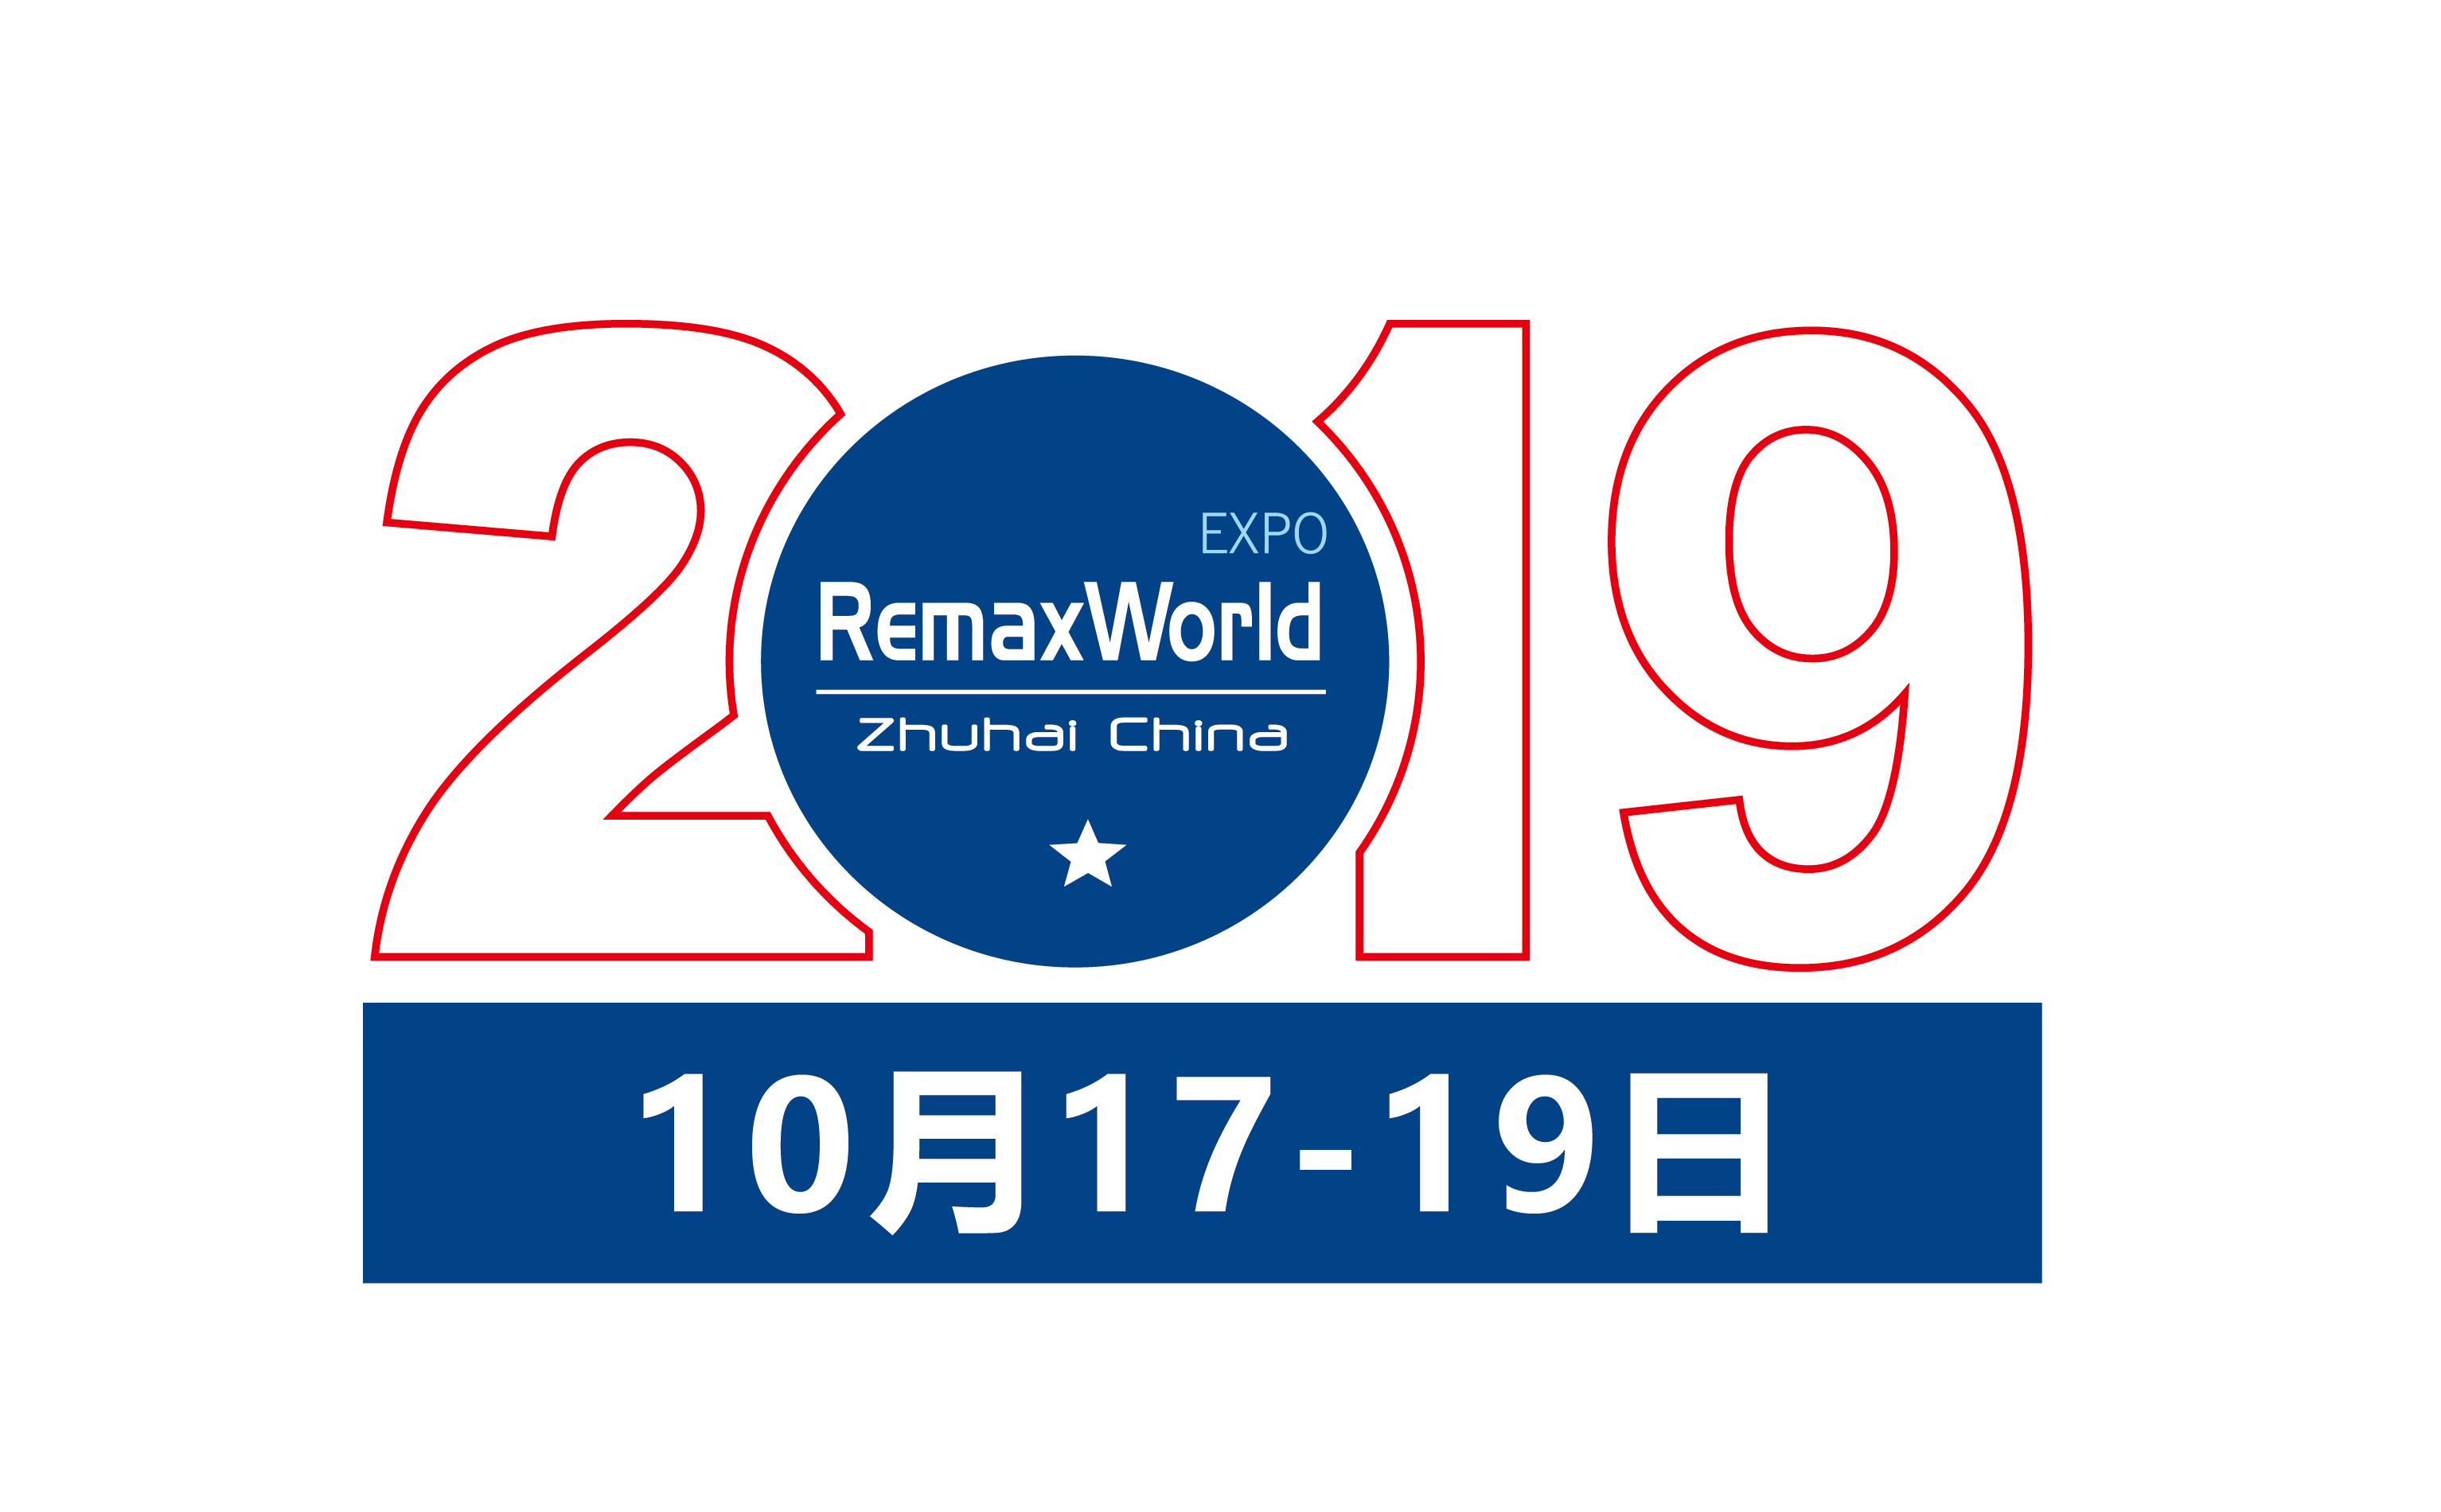 RemaxWorld EXPO 2019